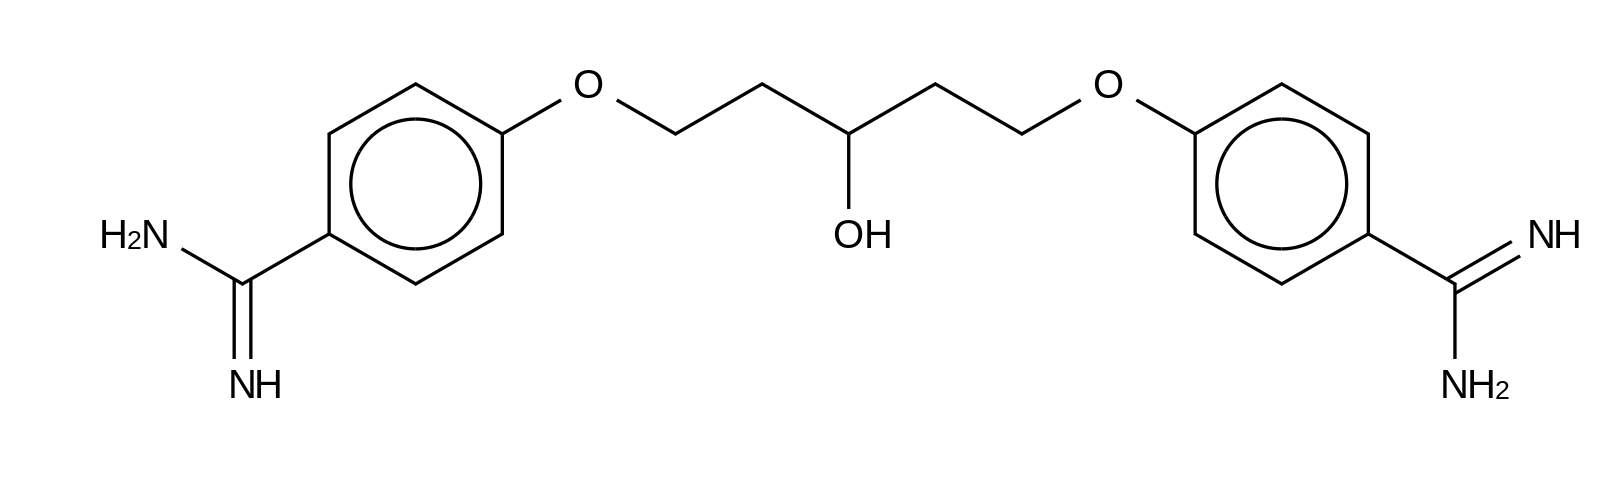 1,5-Bis(4-amidinophenoxy)-3-pentanol